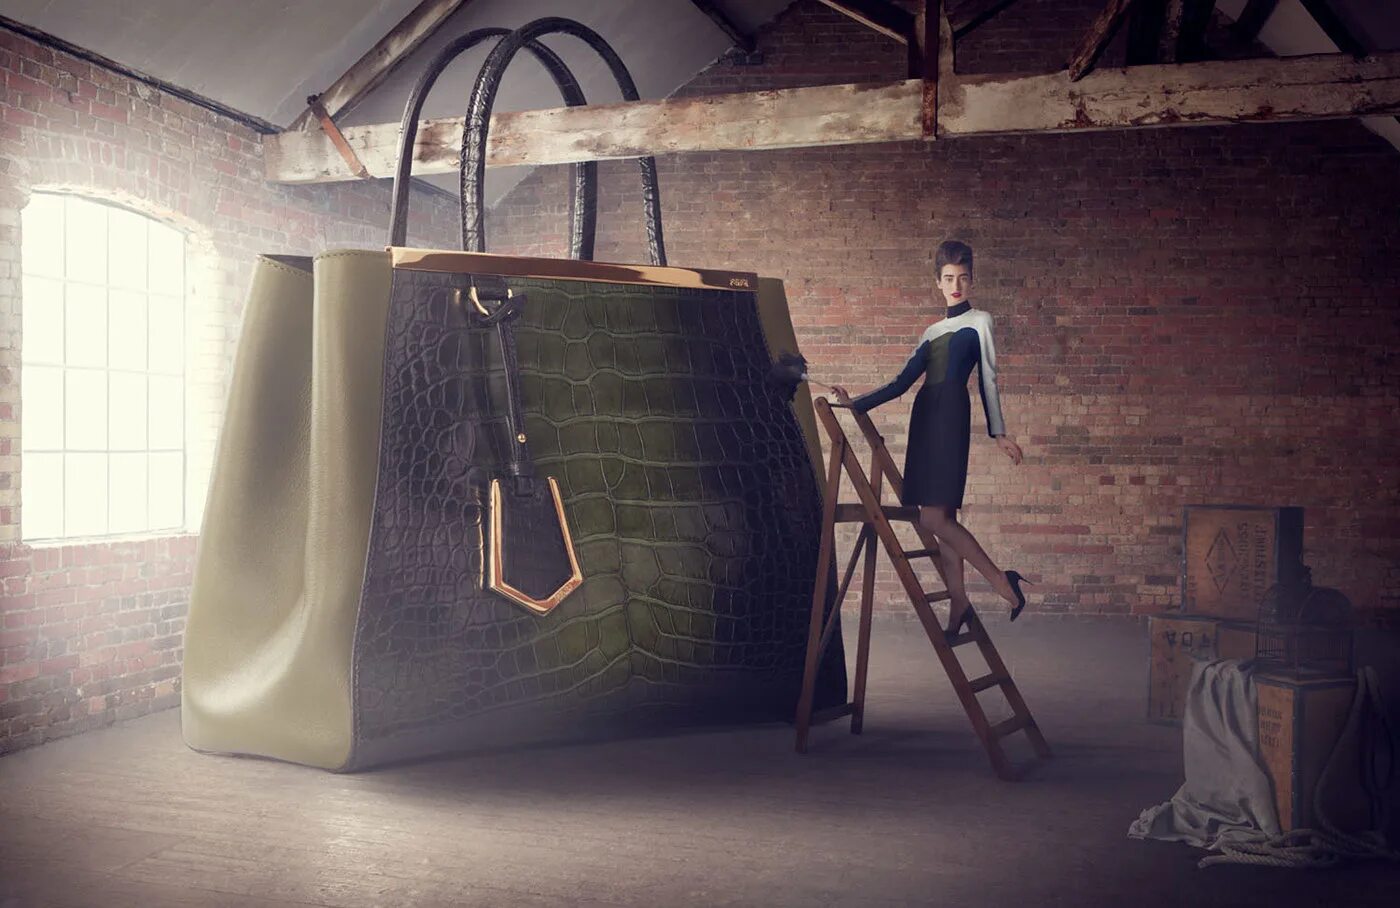 Май креатив. Креативная реклама сумок. Необычная фотосъемка сумок. Необычная реклама сумок. Самая большая сумка.